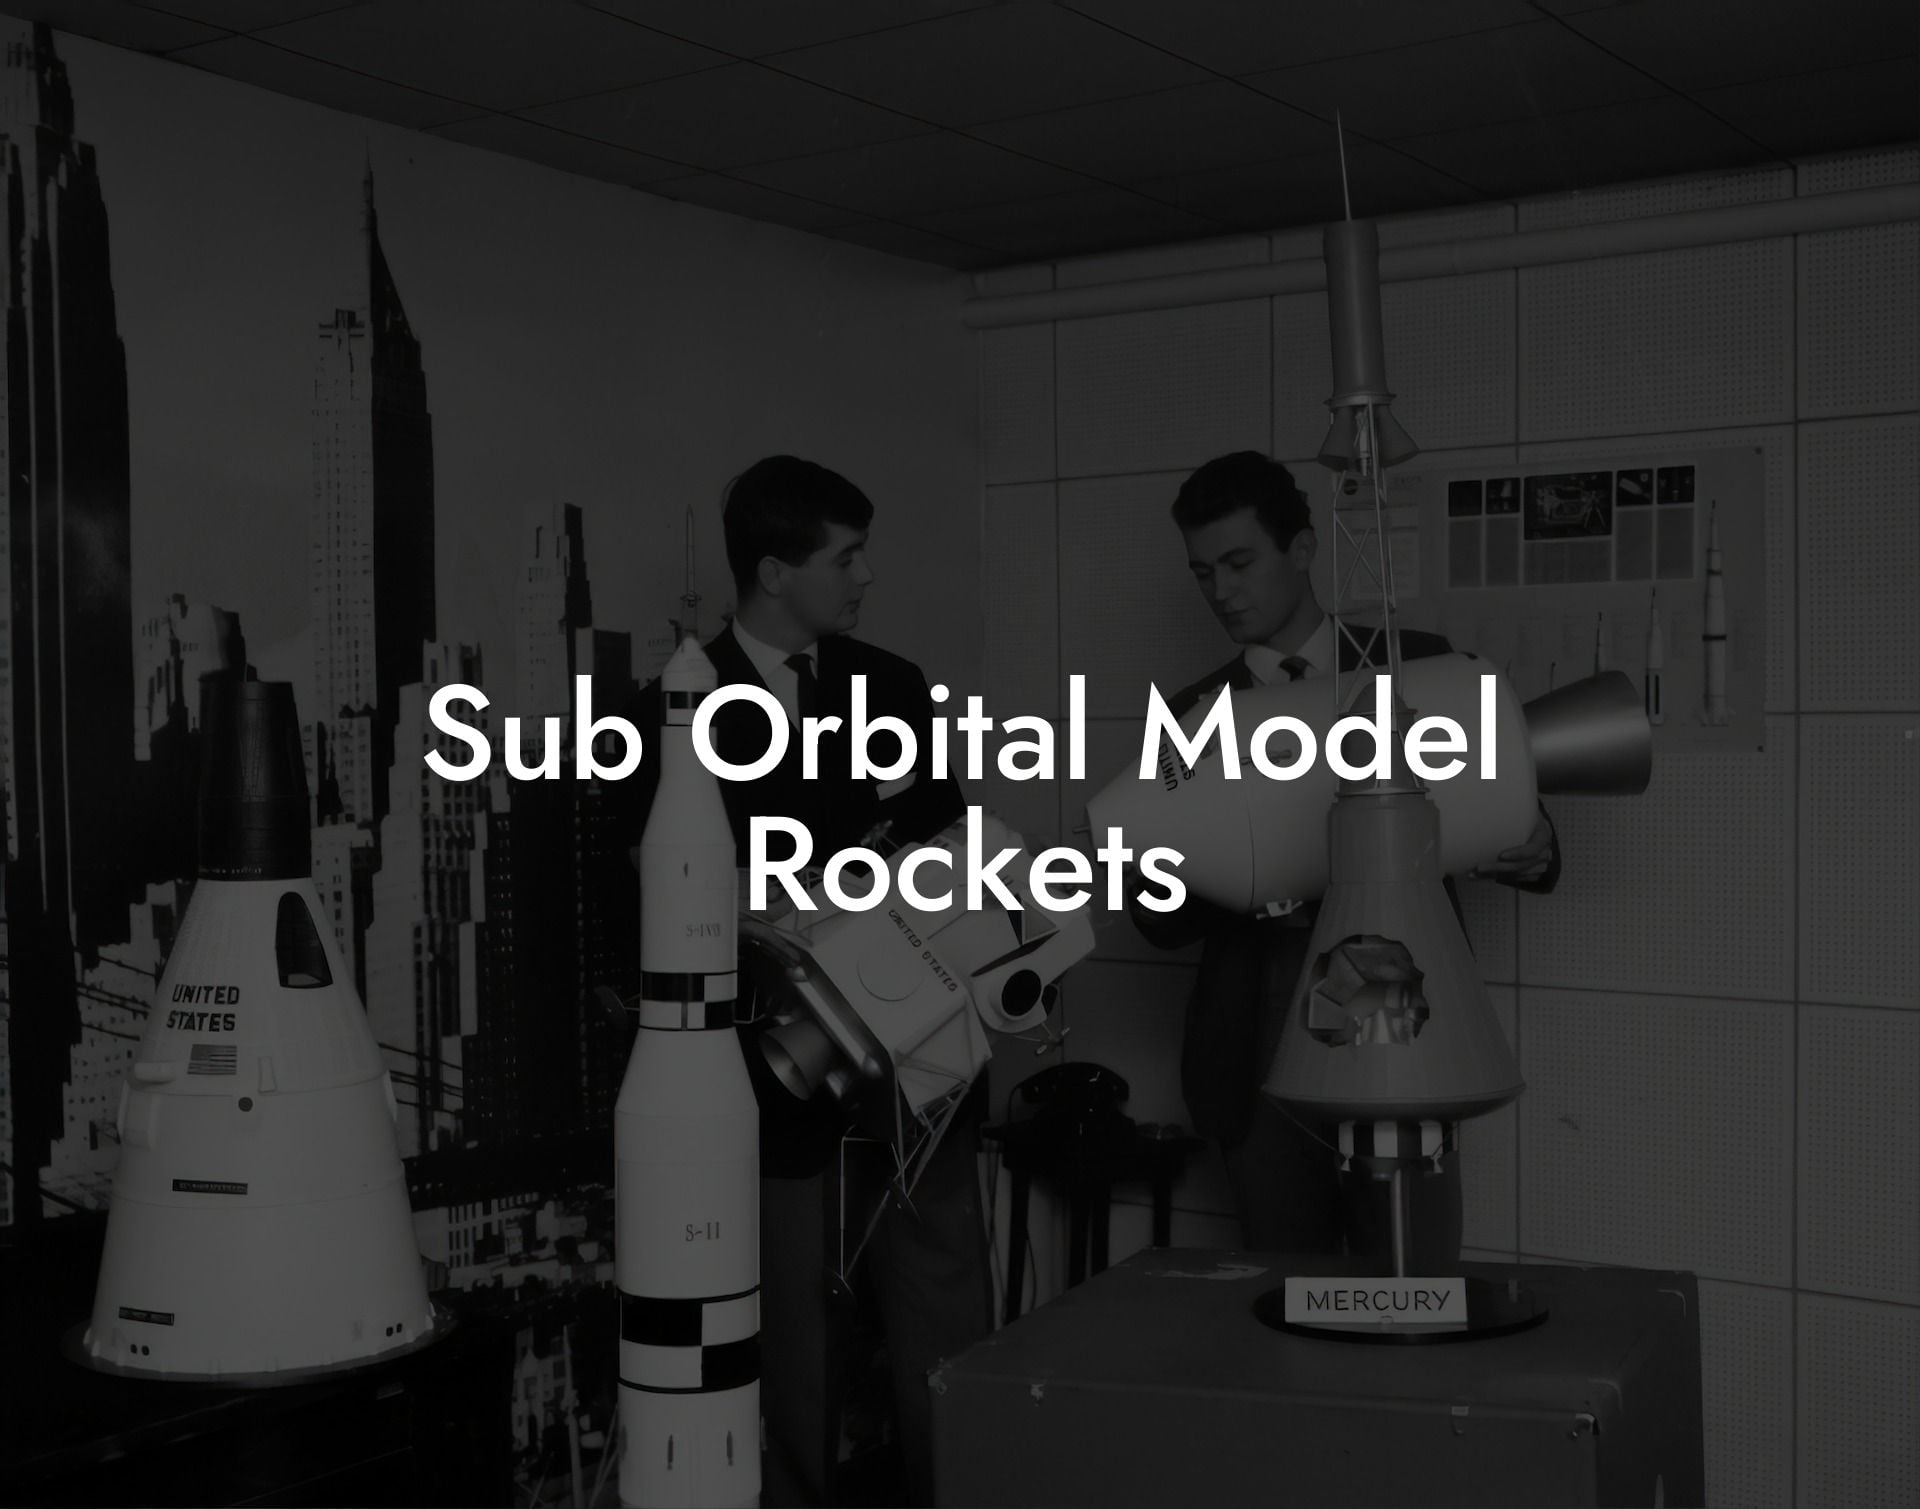 Sub Orbital Model Rockets